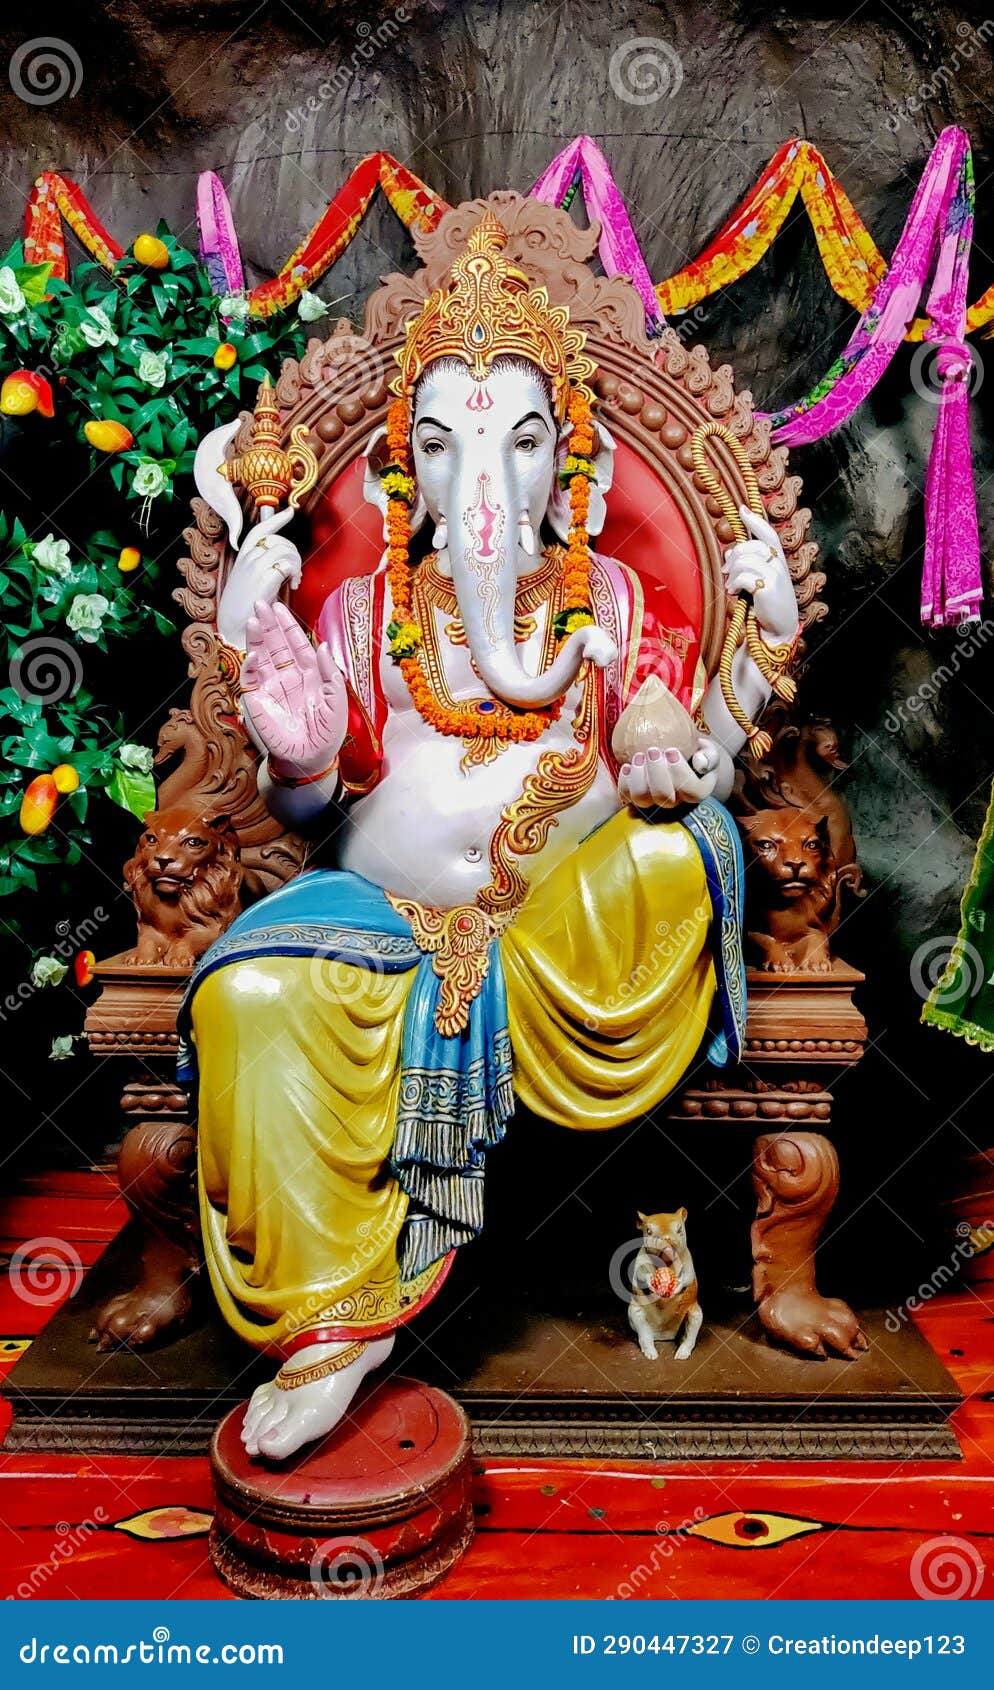 Indian Ganesha Festival , Lord Ganesha Stock Image - Image of ganesha ...